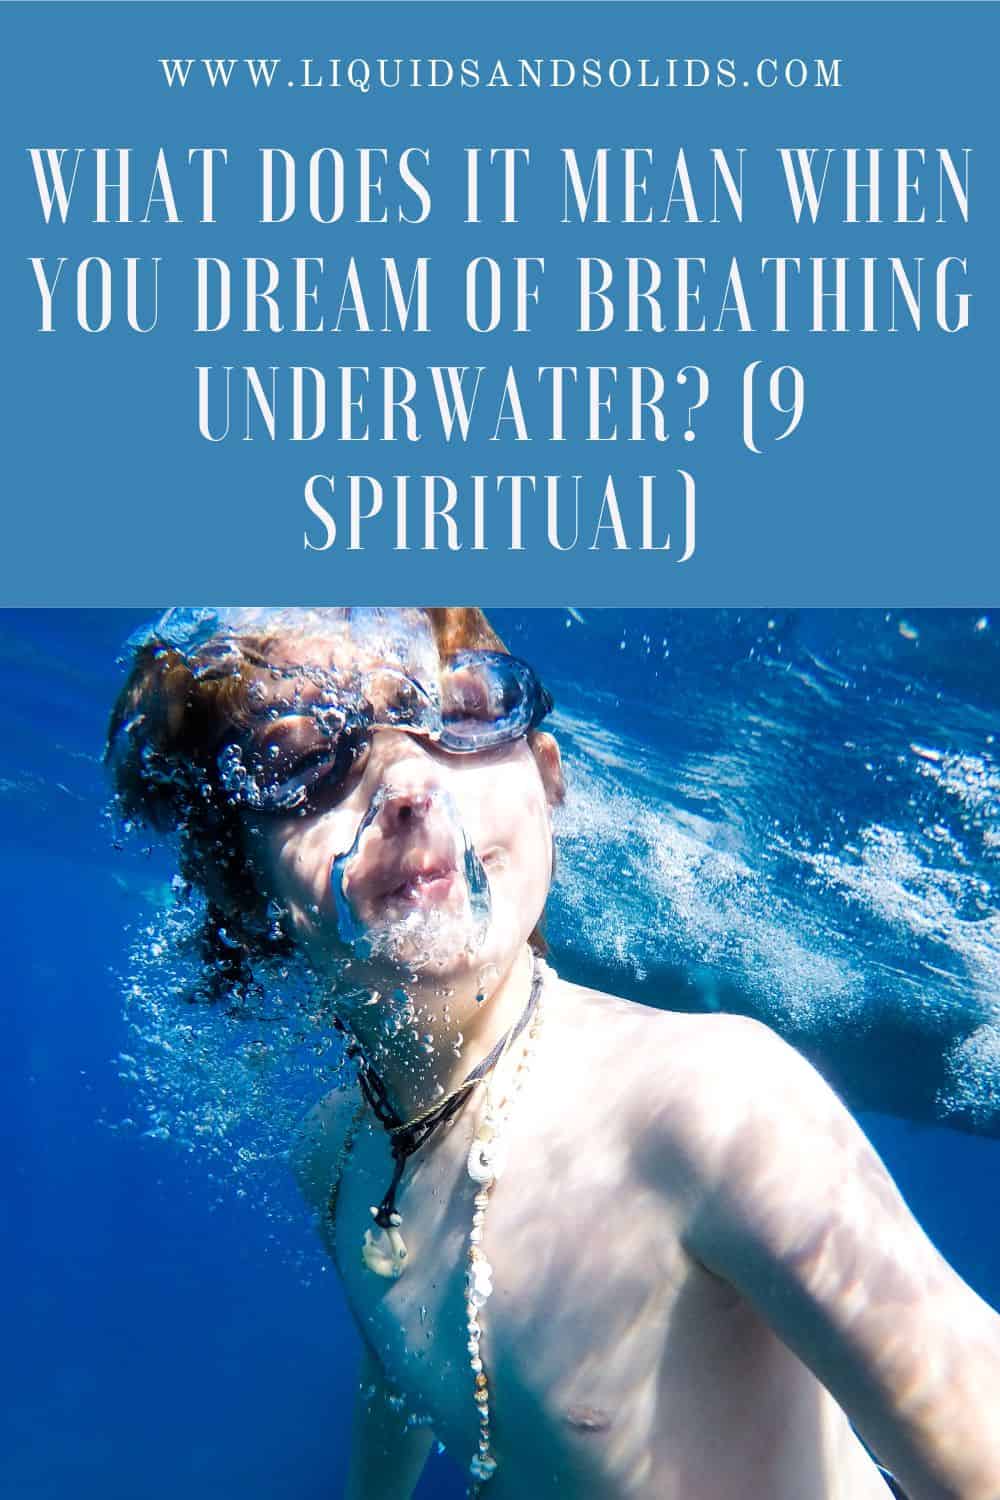  Drøm om at trække vejret under vandet? (9 spirituelle betydninger)